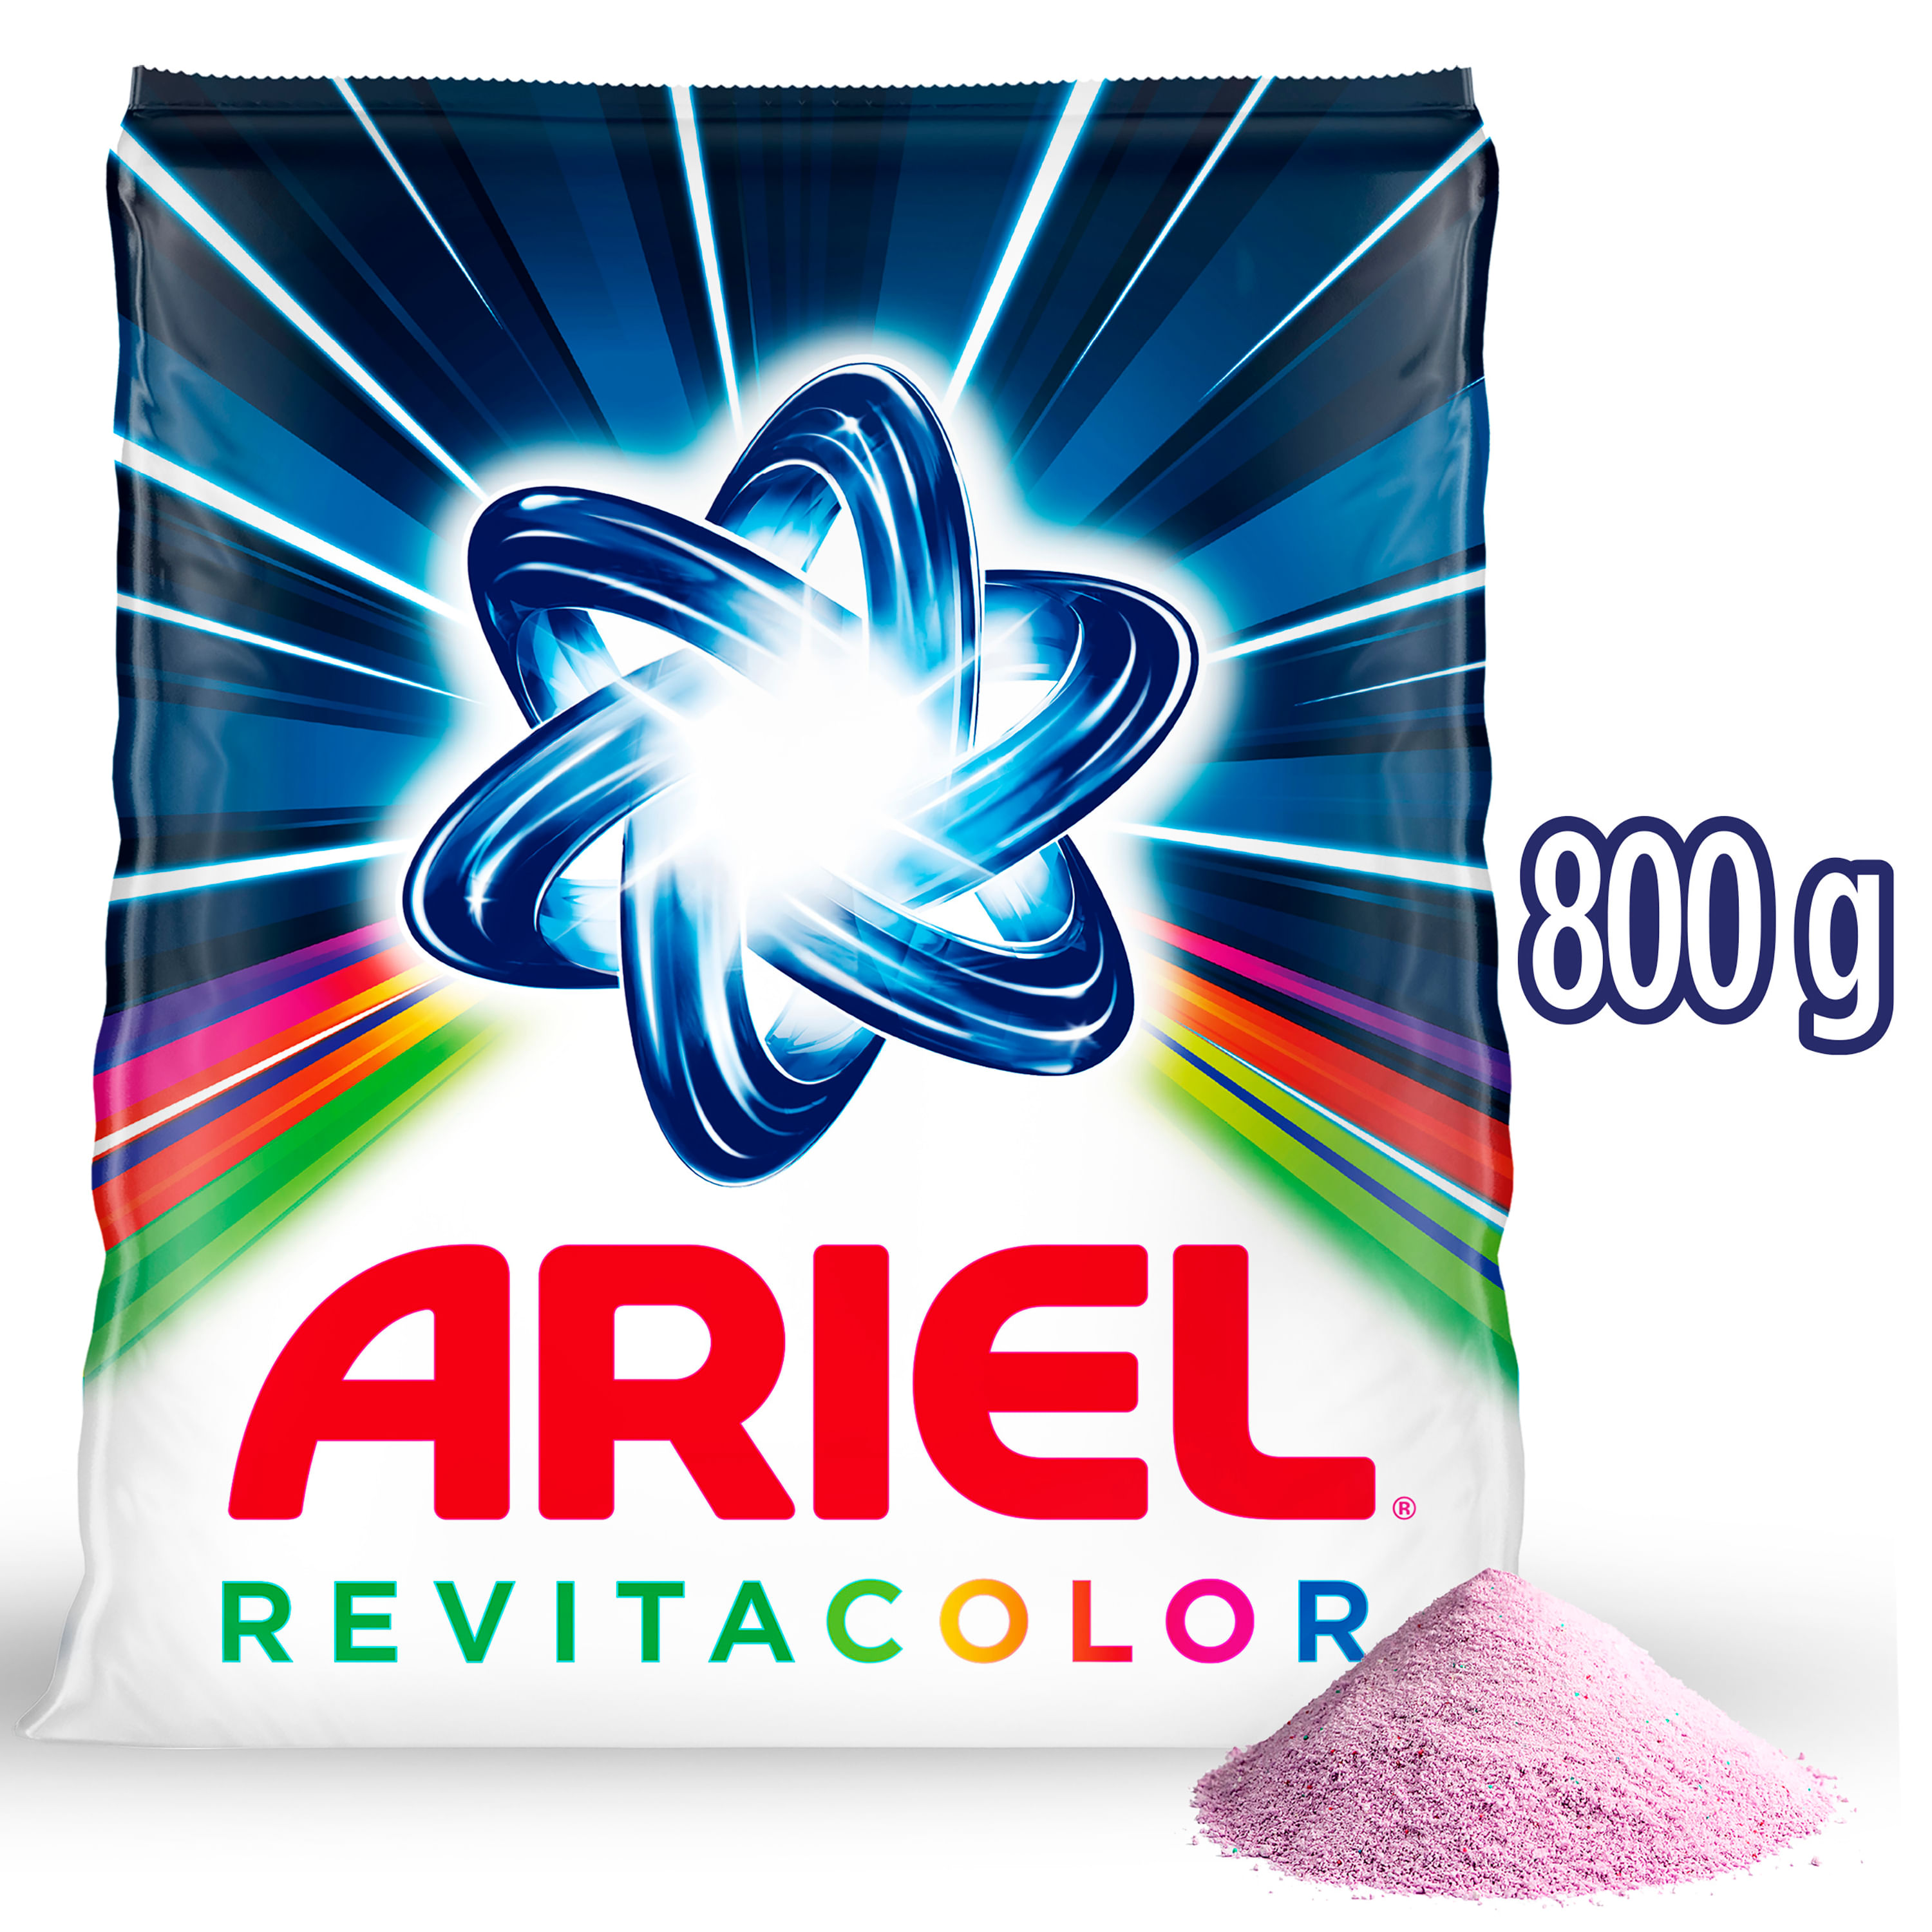 Detergente-en-Polvo-Ariel-Revitacolor-800g-1-34033